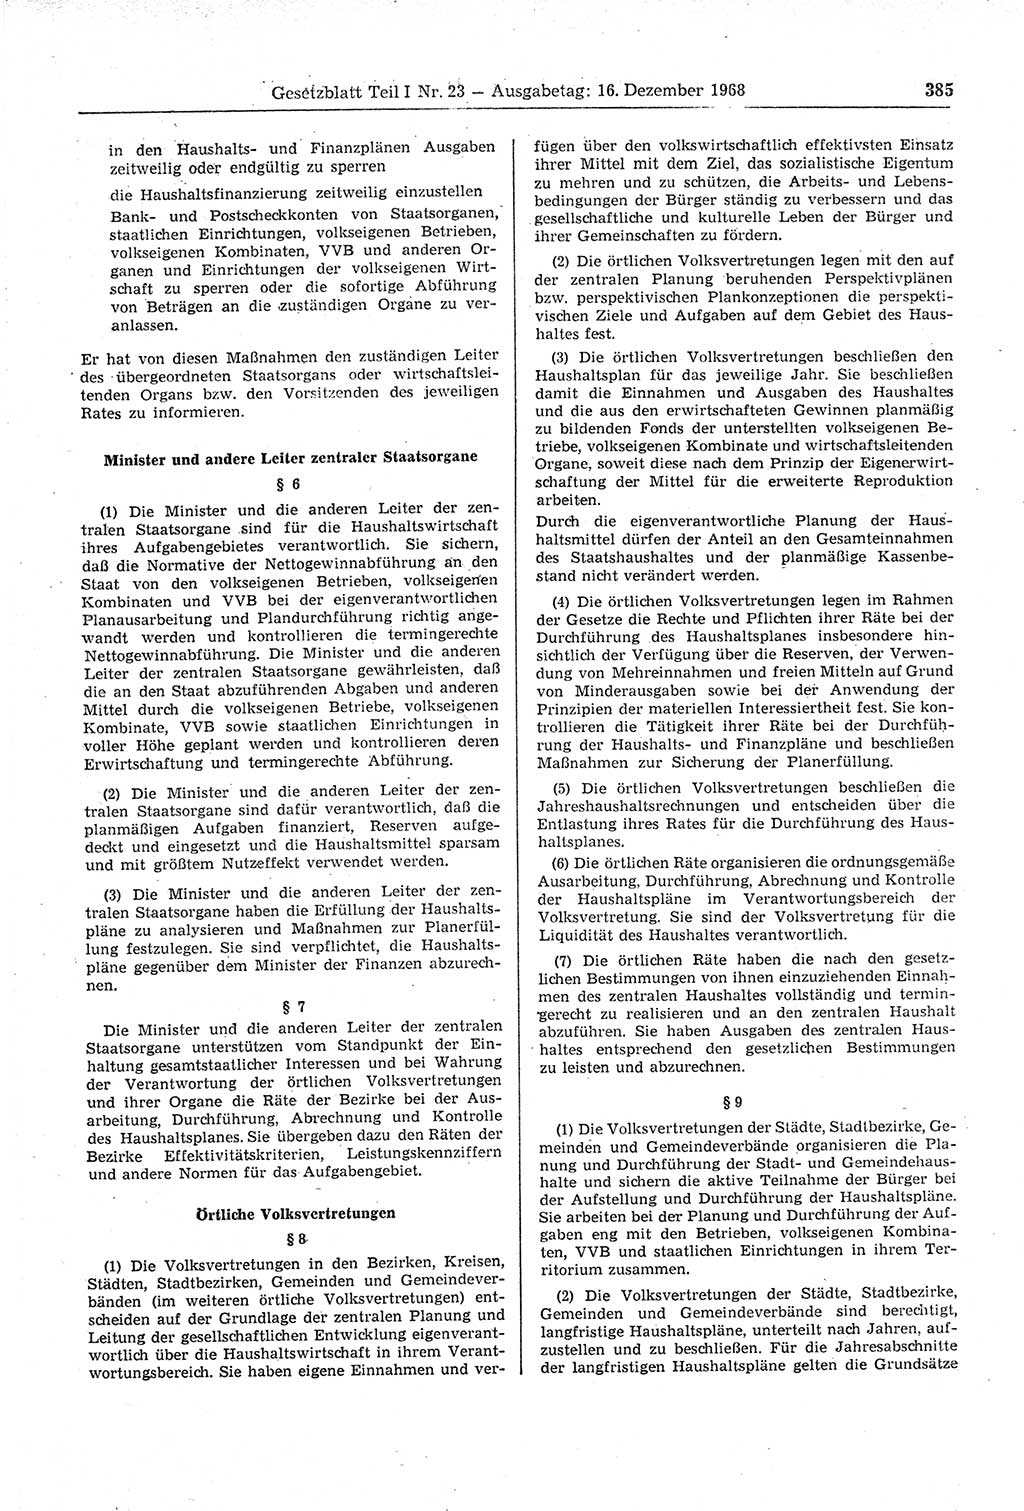 Gesetzblatt (GBl.) der Deutschen Demokratischen Republik (DDR) Teil Ⅰ 1968, Seite 385 (GBl. DDR Ⅰ 1968, S. 385)